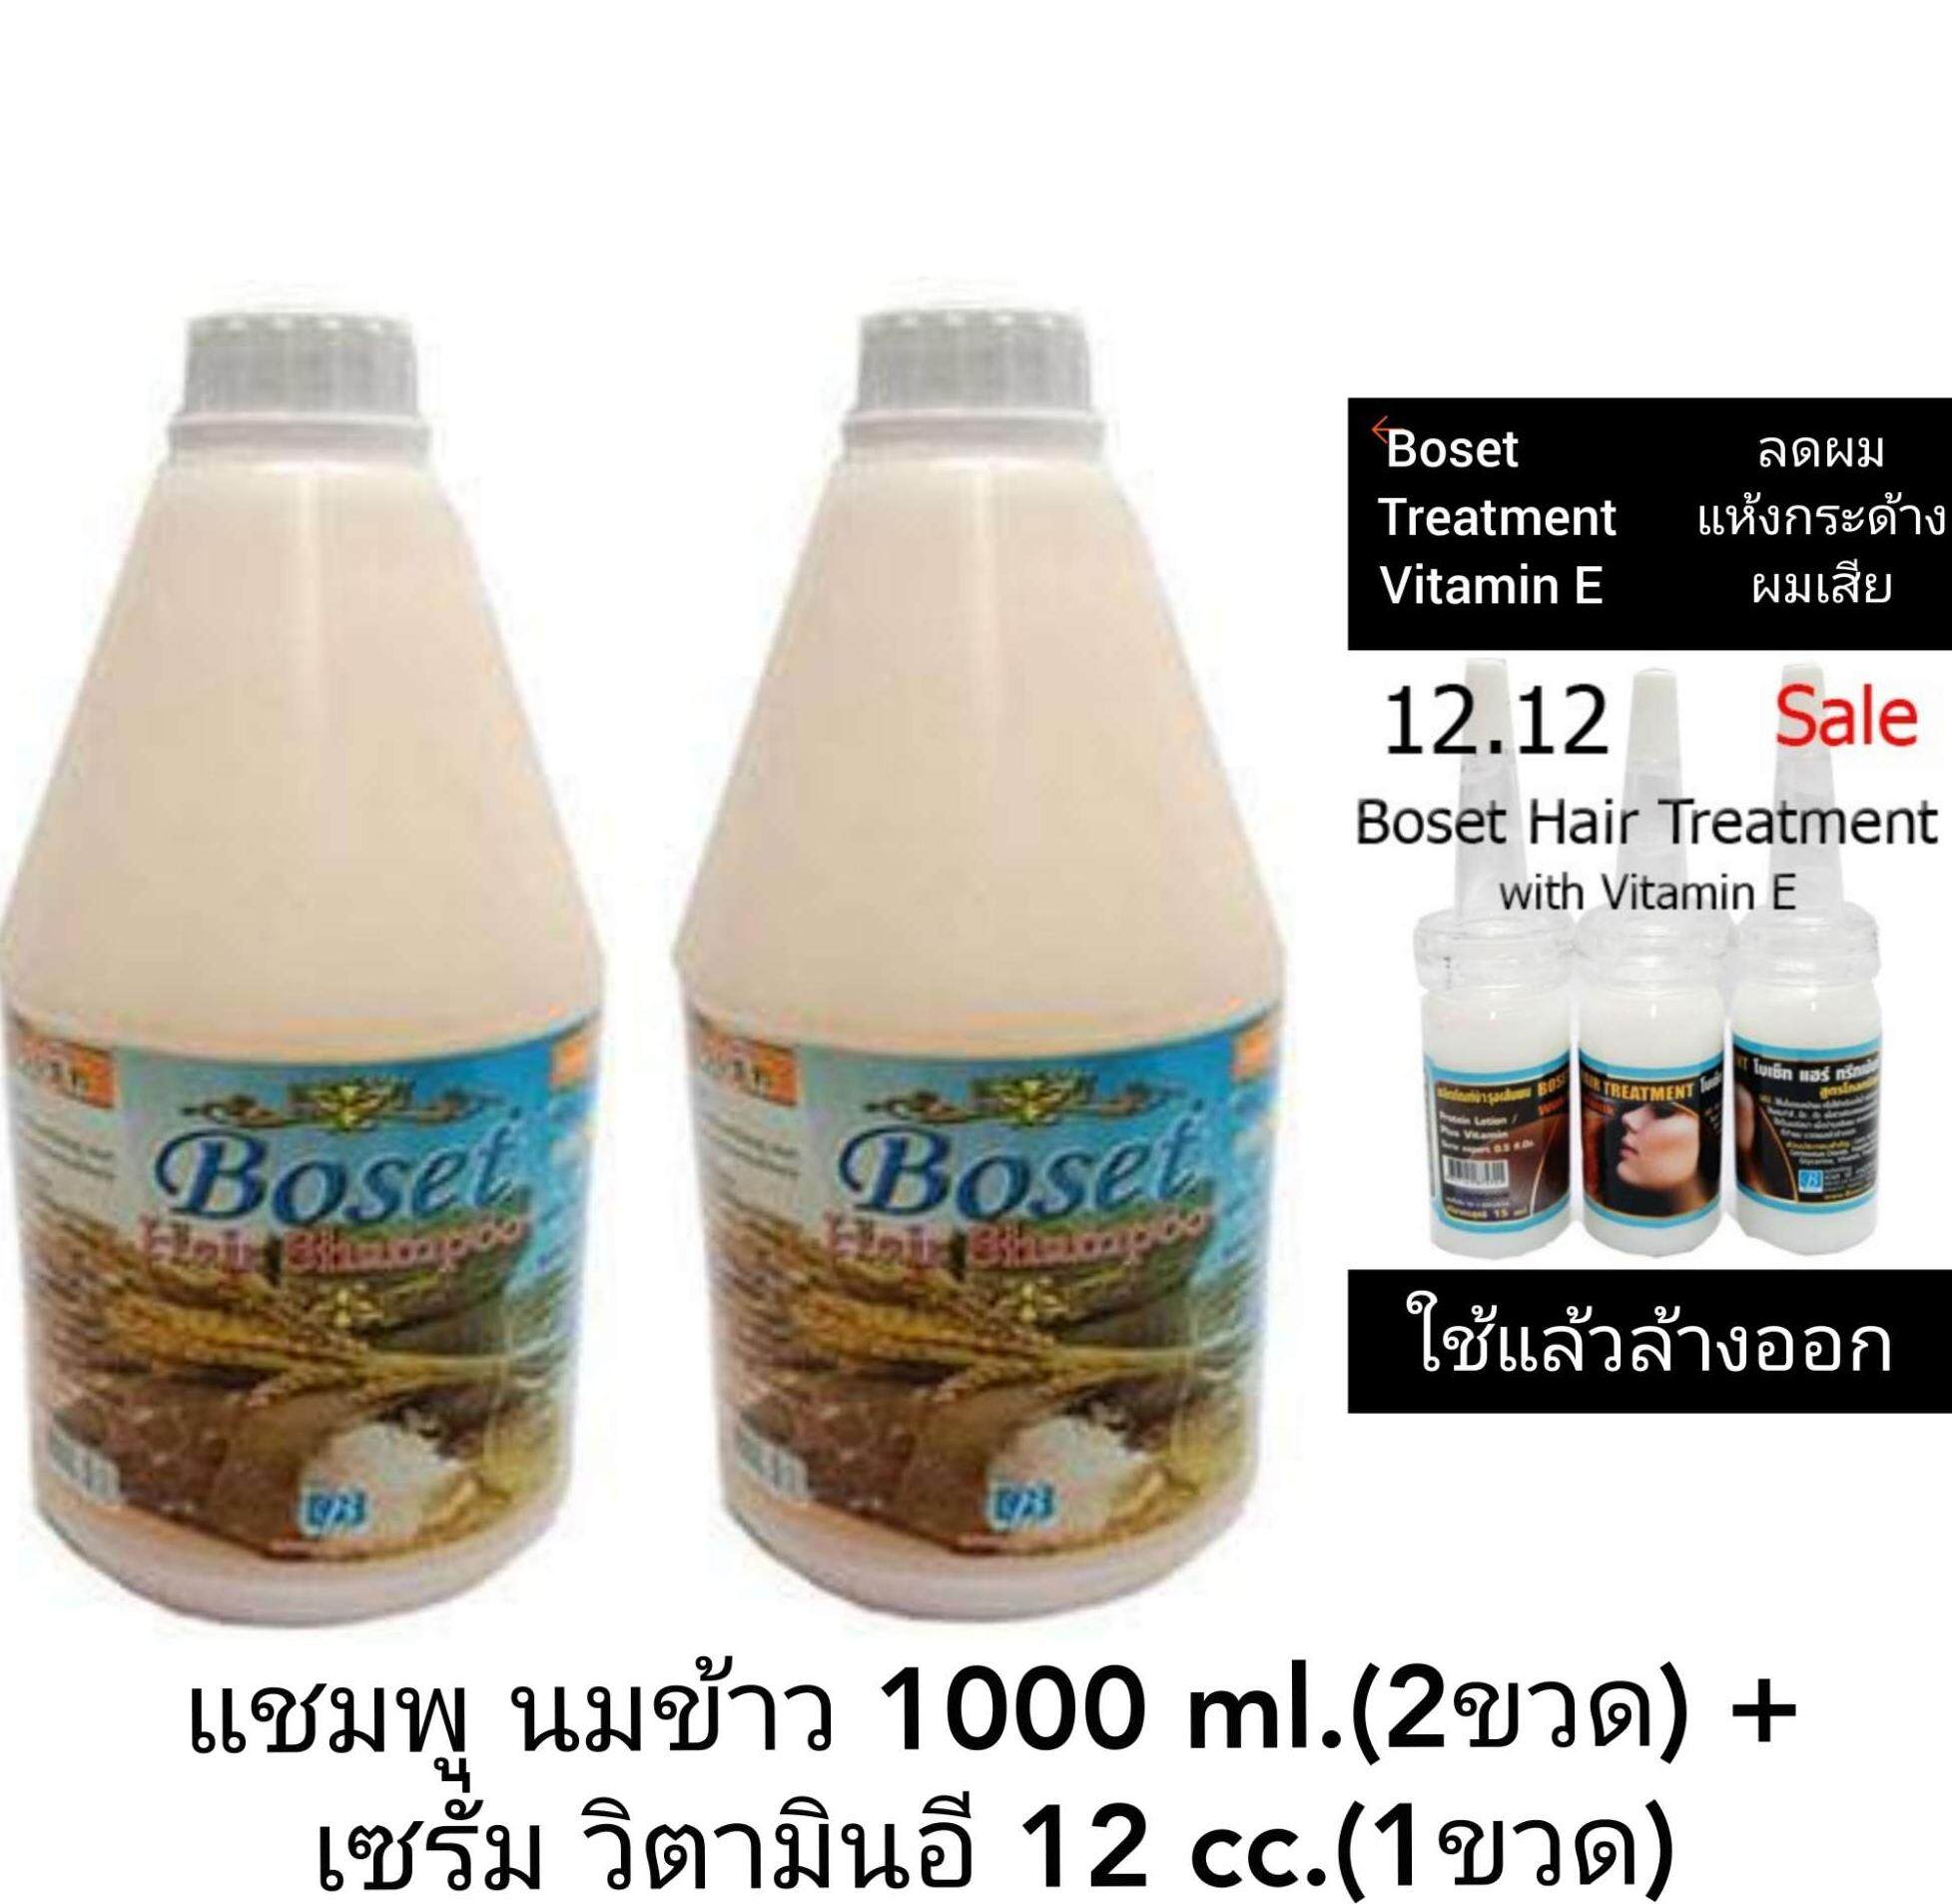 แชมพูสระผม นมข้าว 1000 ml.( 2 ขวด ) + เซรั่ม วิตามินอี 12 cc. (1ขวด)Boset